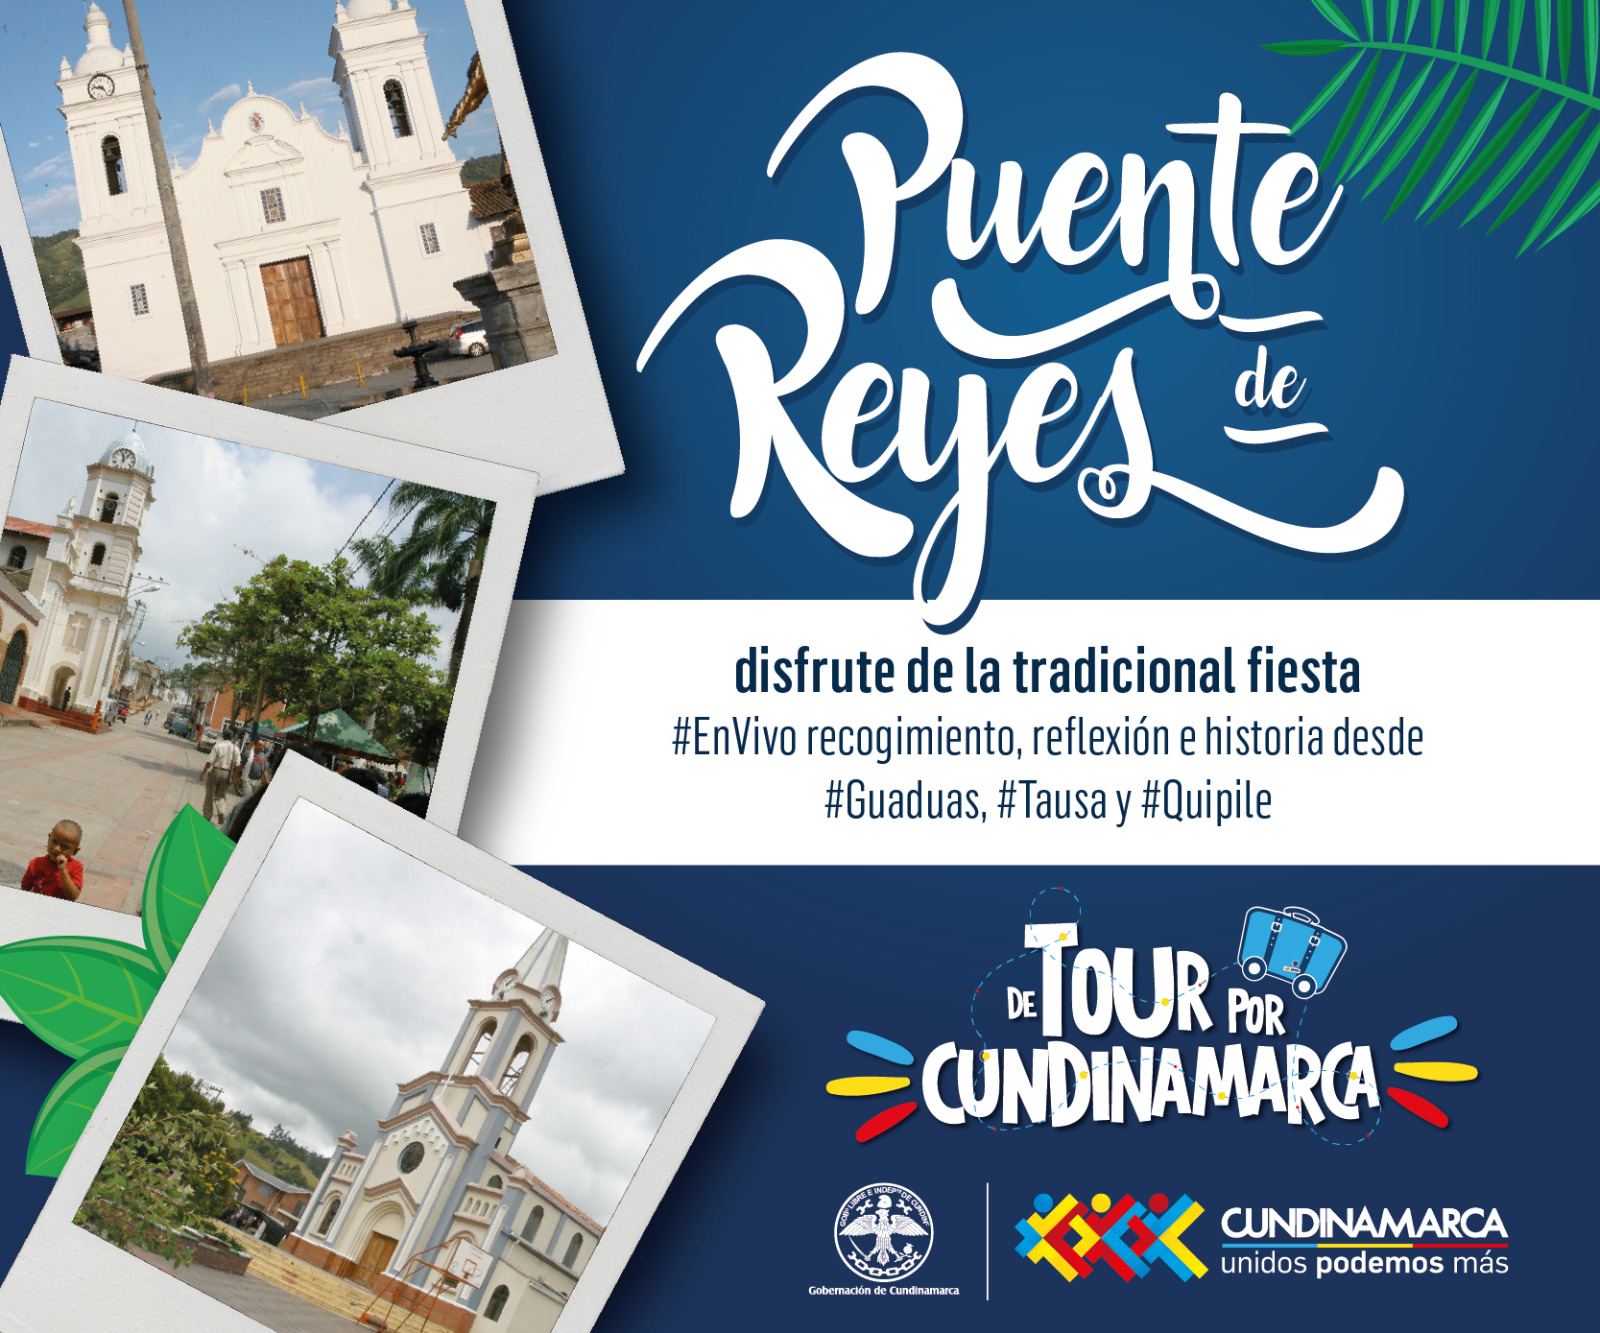 Este puente festivo de Reyes Magos, el mejor plan es irse de “Tour por Cundinamarca”
